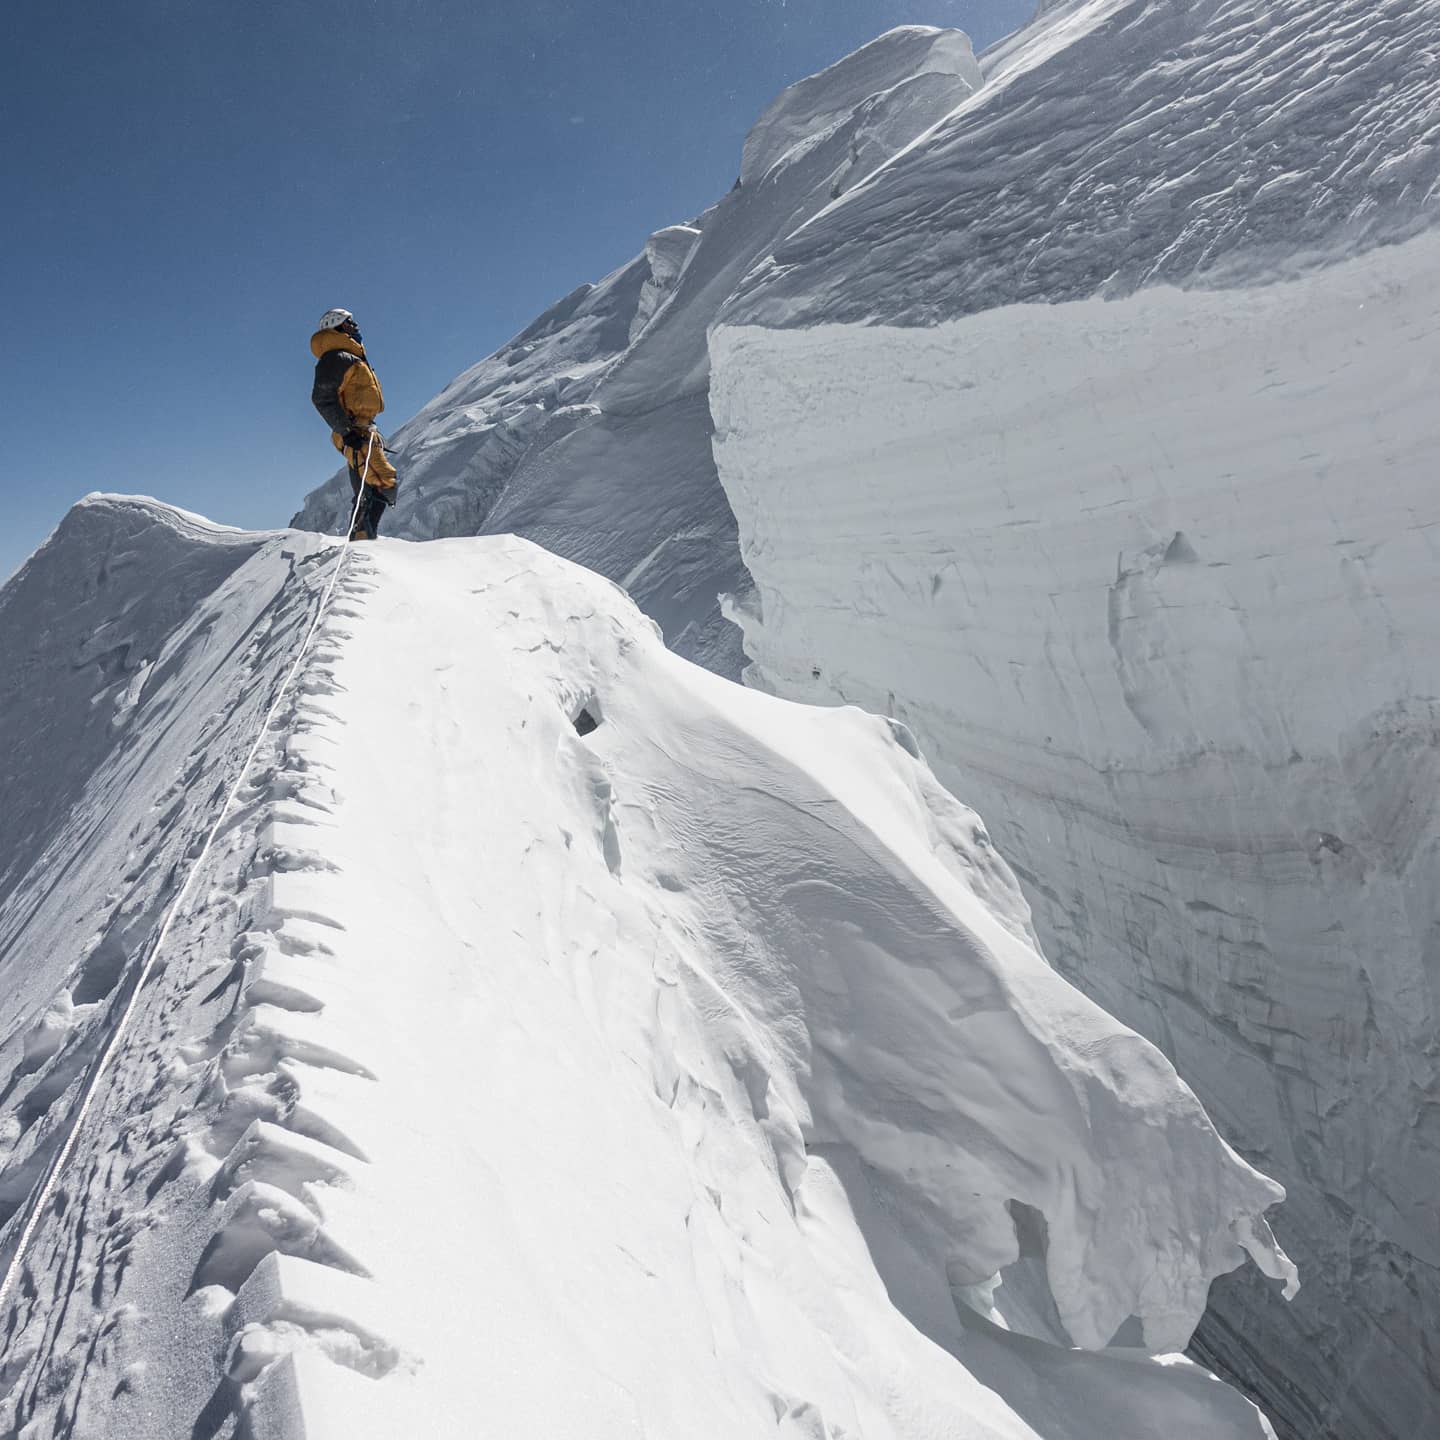 “Non è possibile salire in stile alpino”: Vinayak Jay Malla e Tenji Sherpa rinunciano al Manaslu